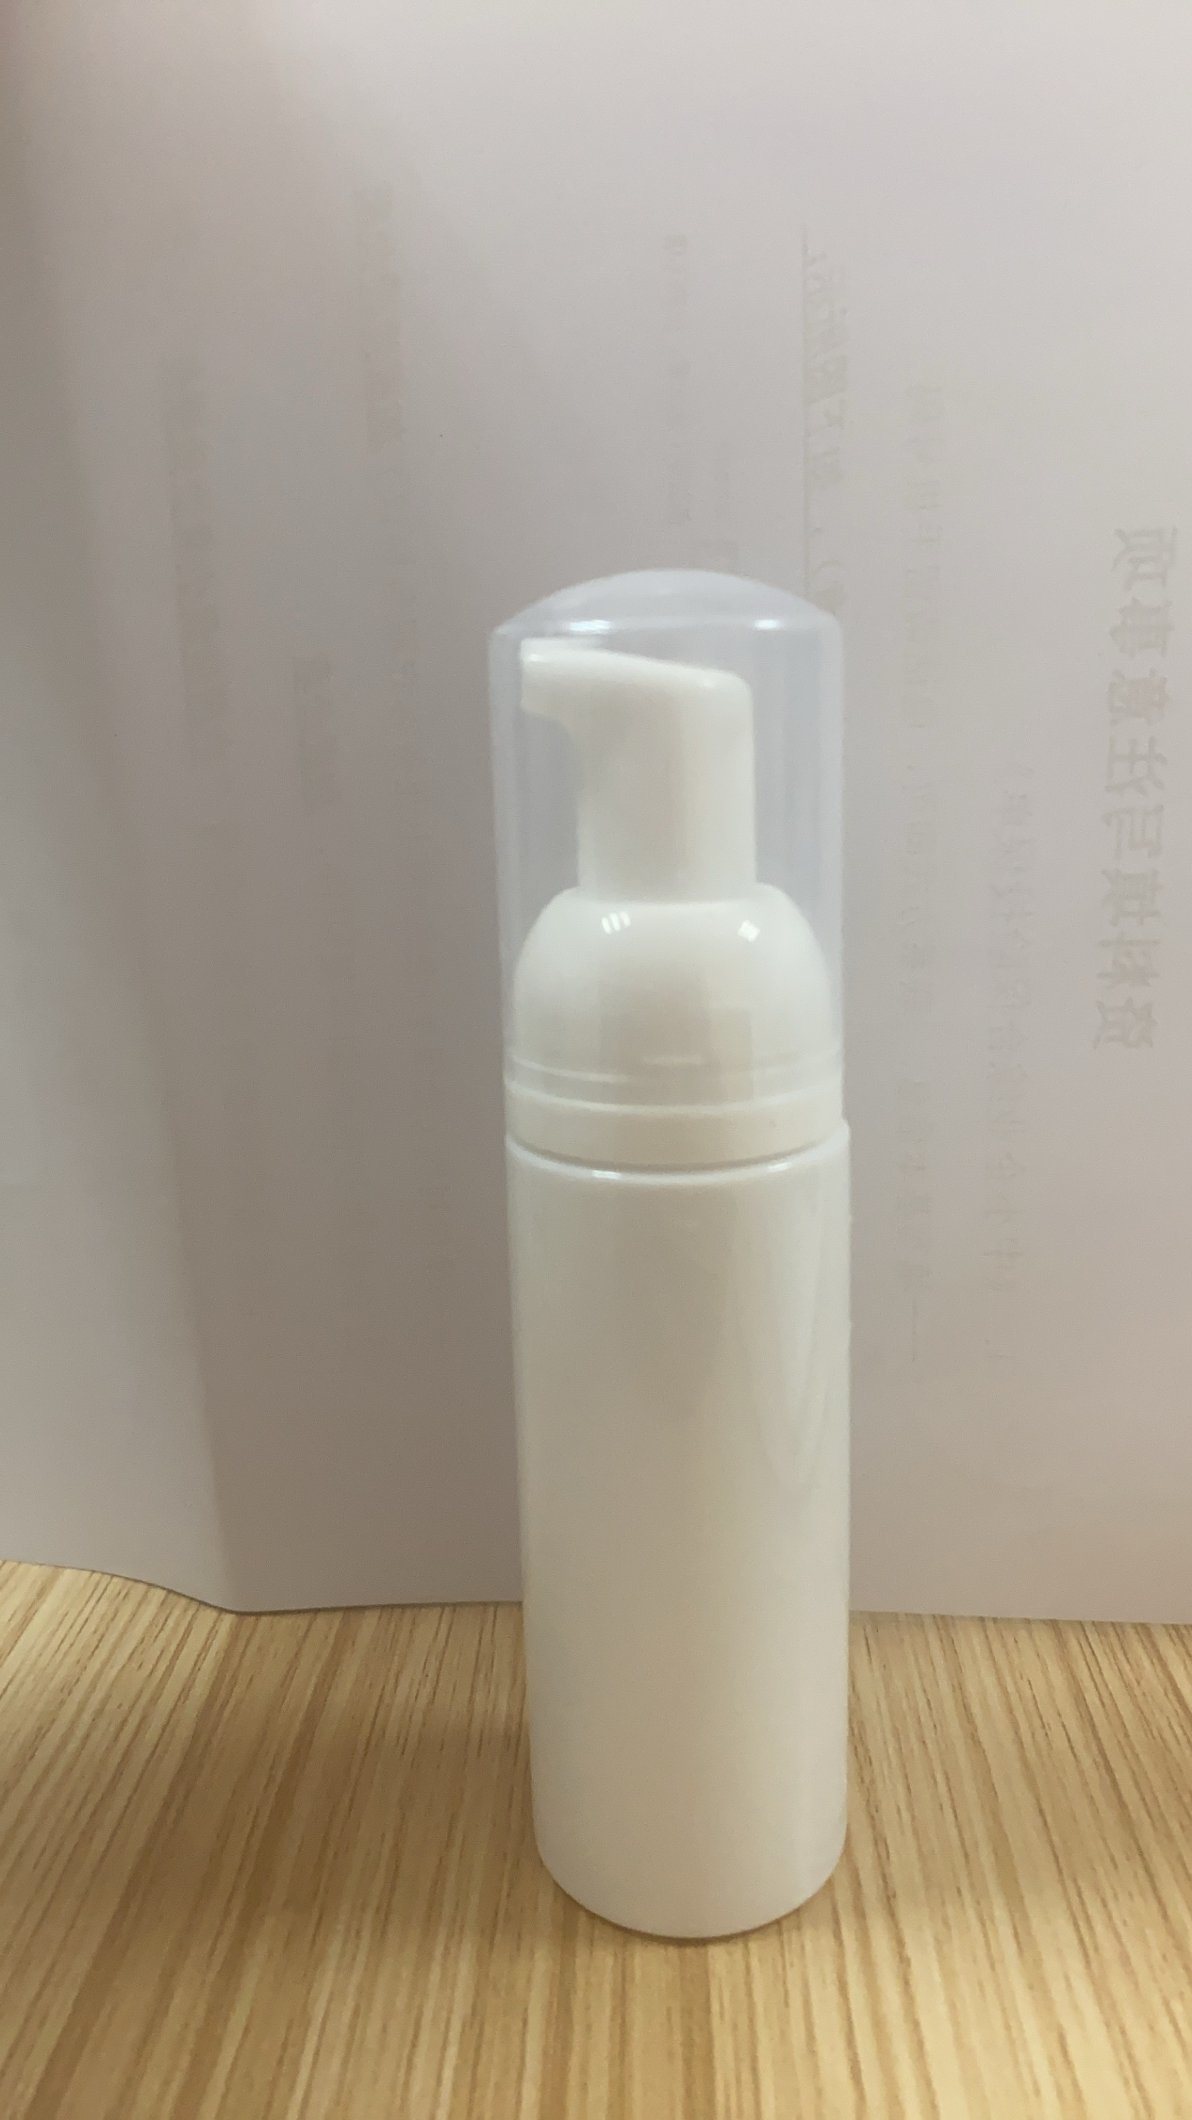 100ml sanitizer bottle mold